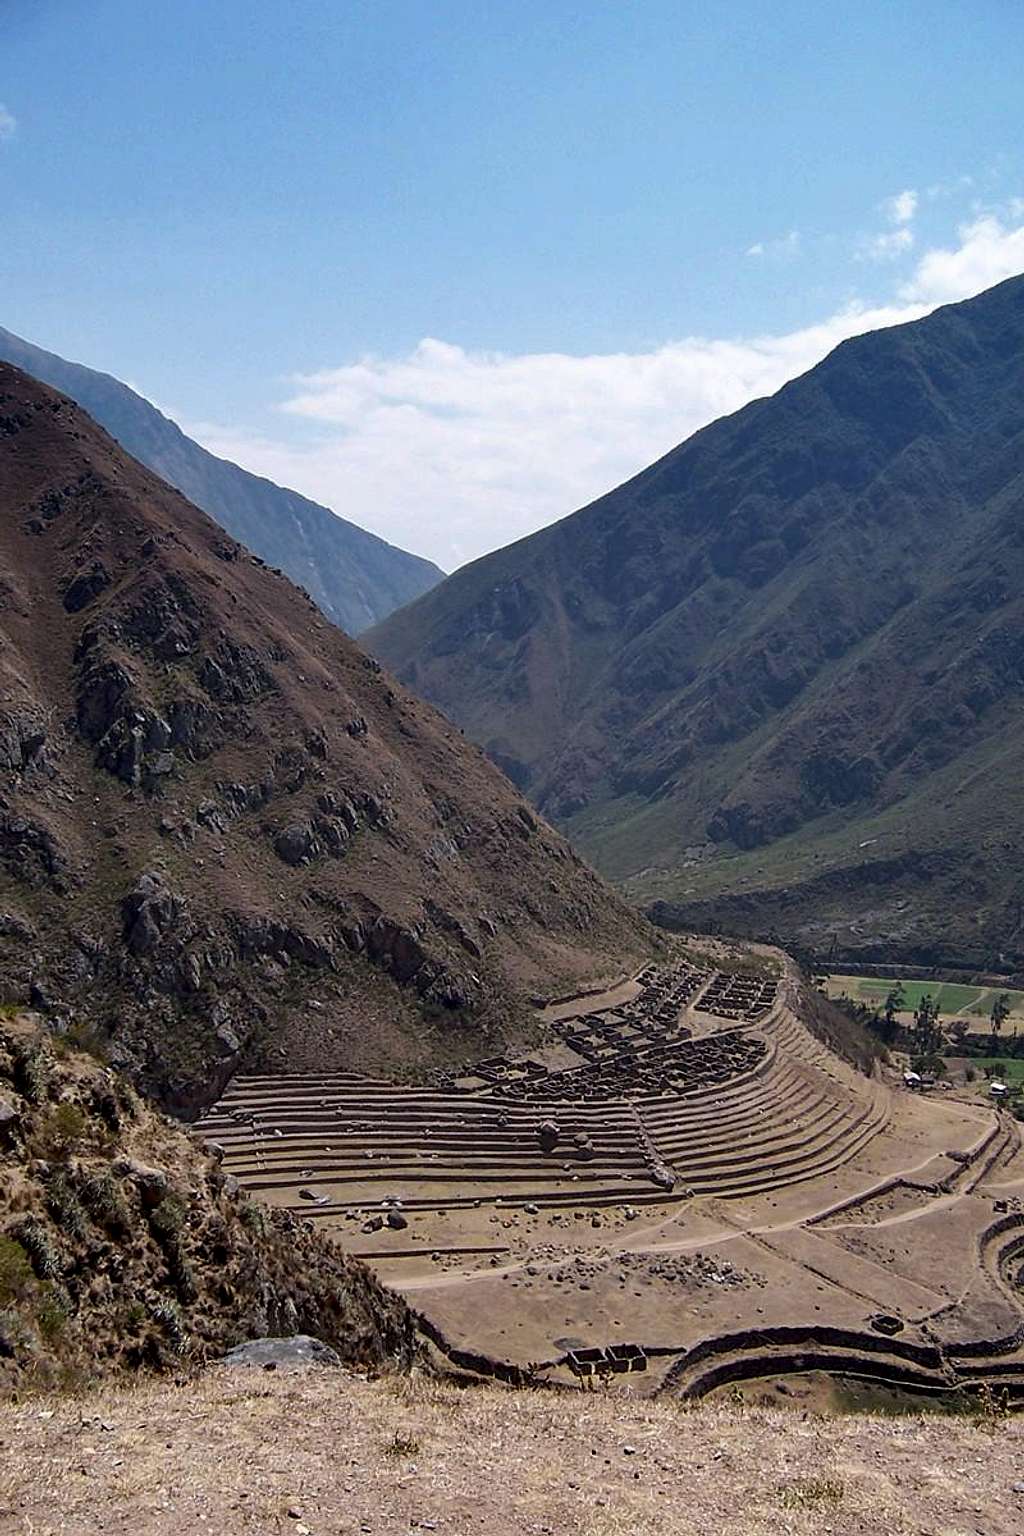 Inca Remains